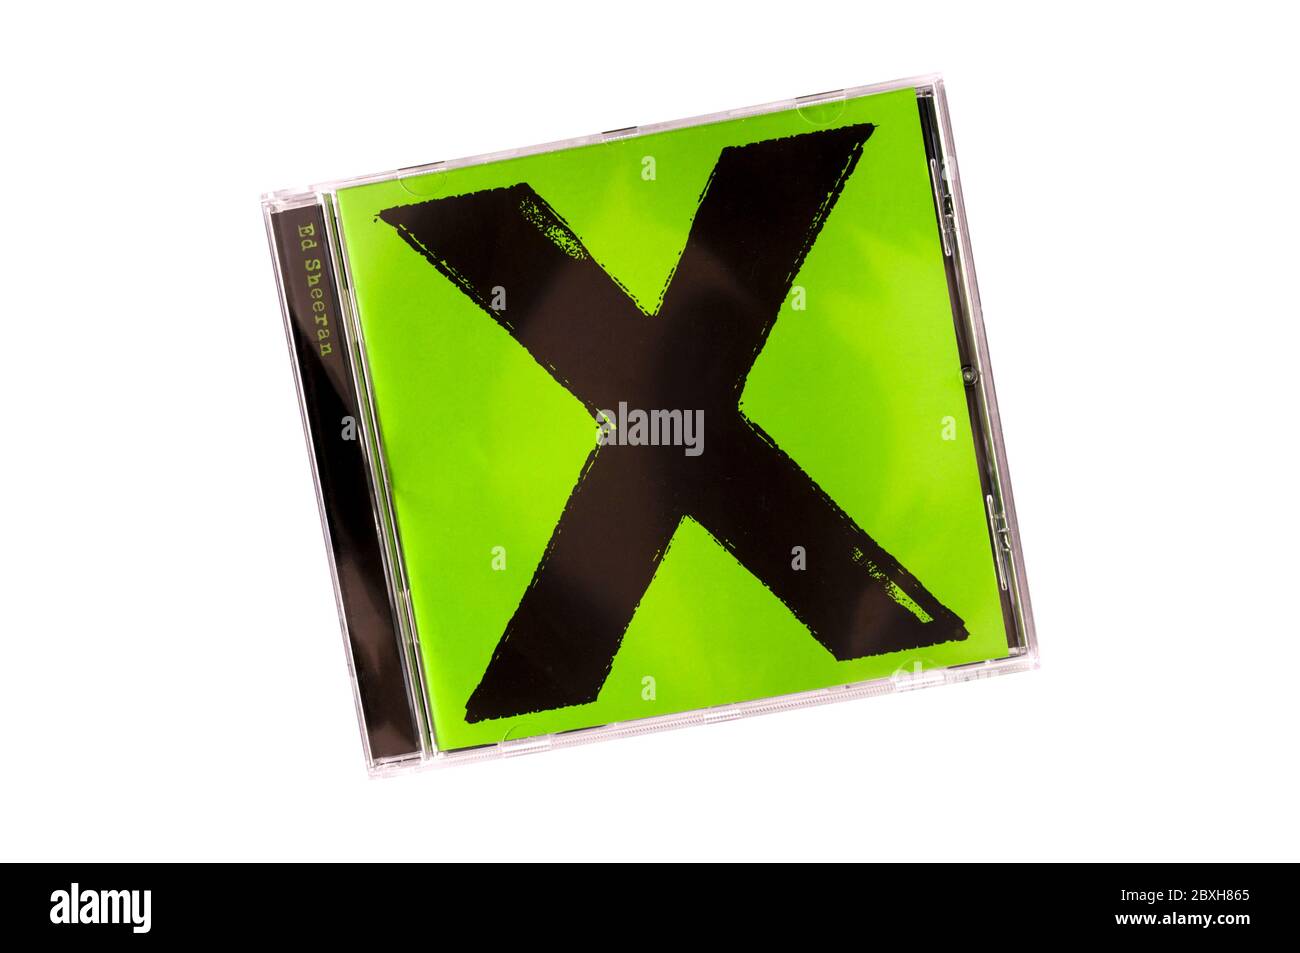 X, ausgesprochen multiplizieren, von Ed Sheeran, war sein zweites Studioalbum. Es wurde 2014 veröffentlicht. Stockfoto